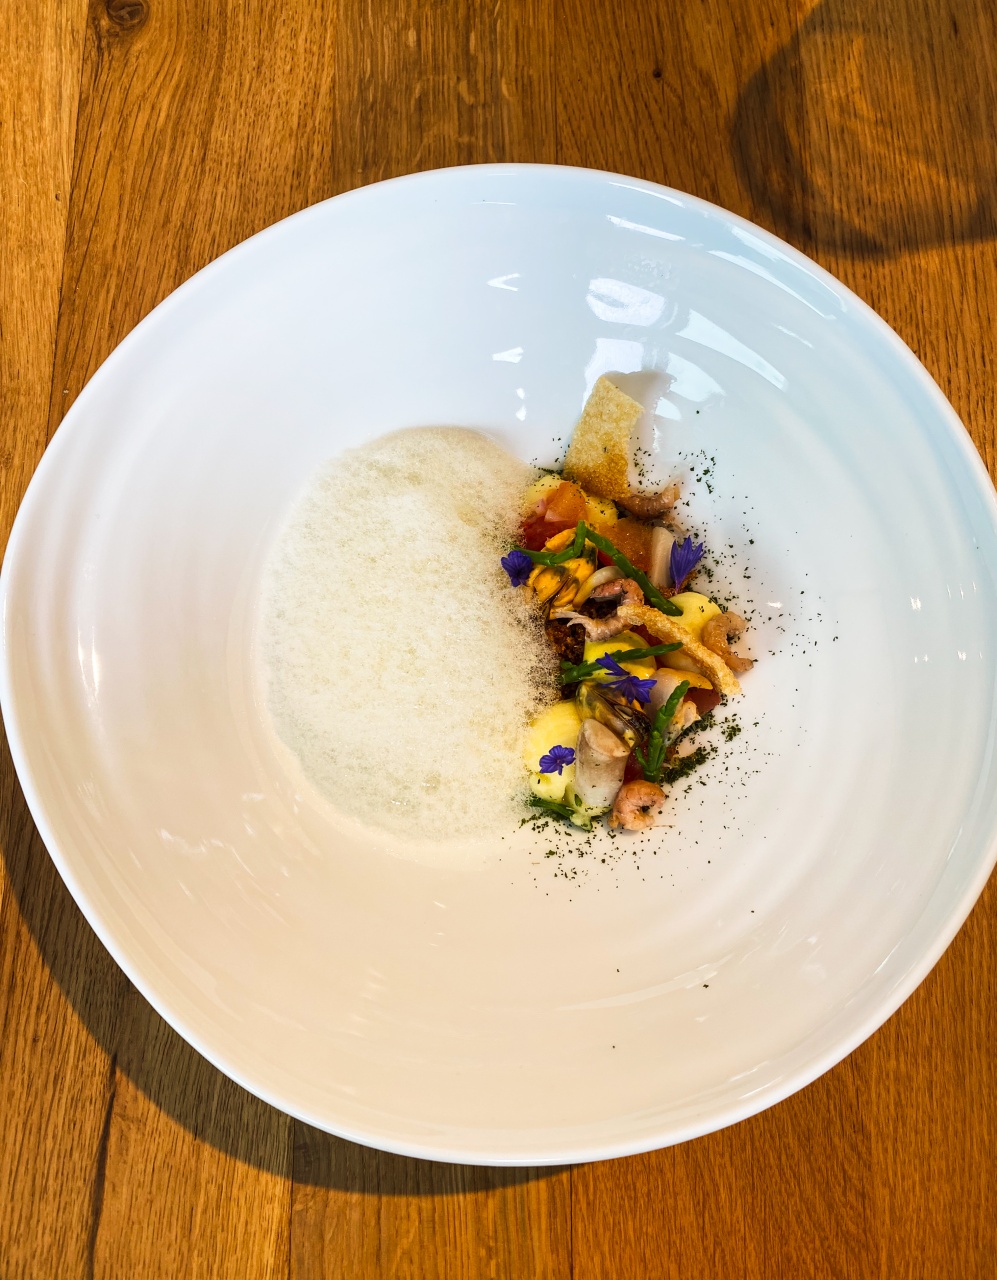 Een culinaire ode aan 'De Noordzee' gepresenteerd op een bord, met smaken van Beurre Noisette, garnaaltjes, zeekraal en aardappel, een zeevruchtendroom tot leven gebracht in Restaurant Dante.